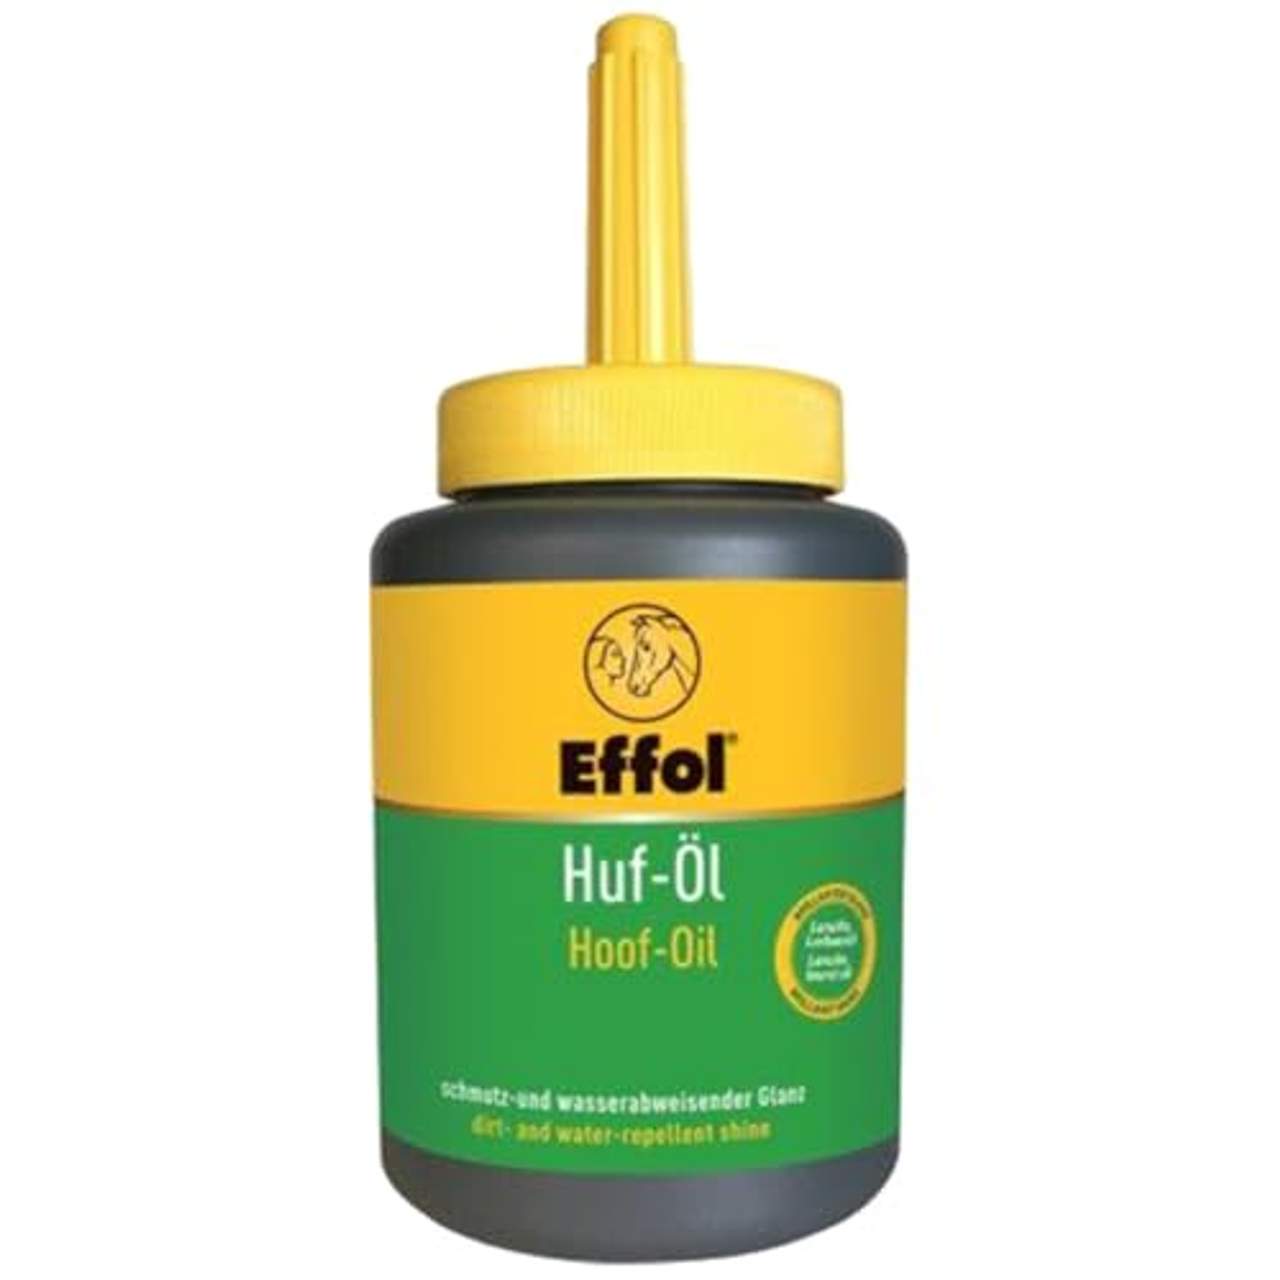 Effol 11147500 Huf-Öl mit Pinsel